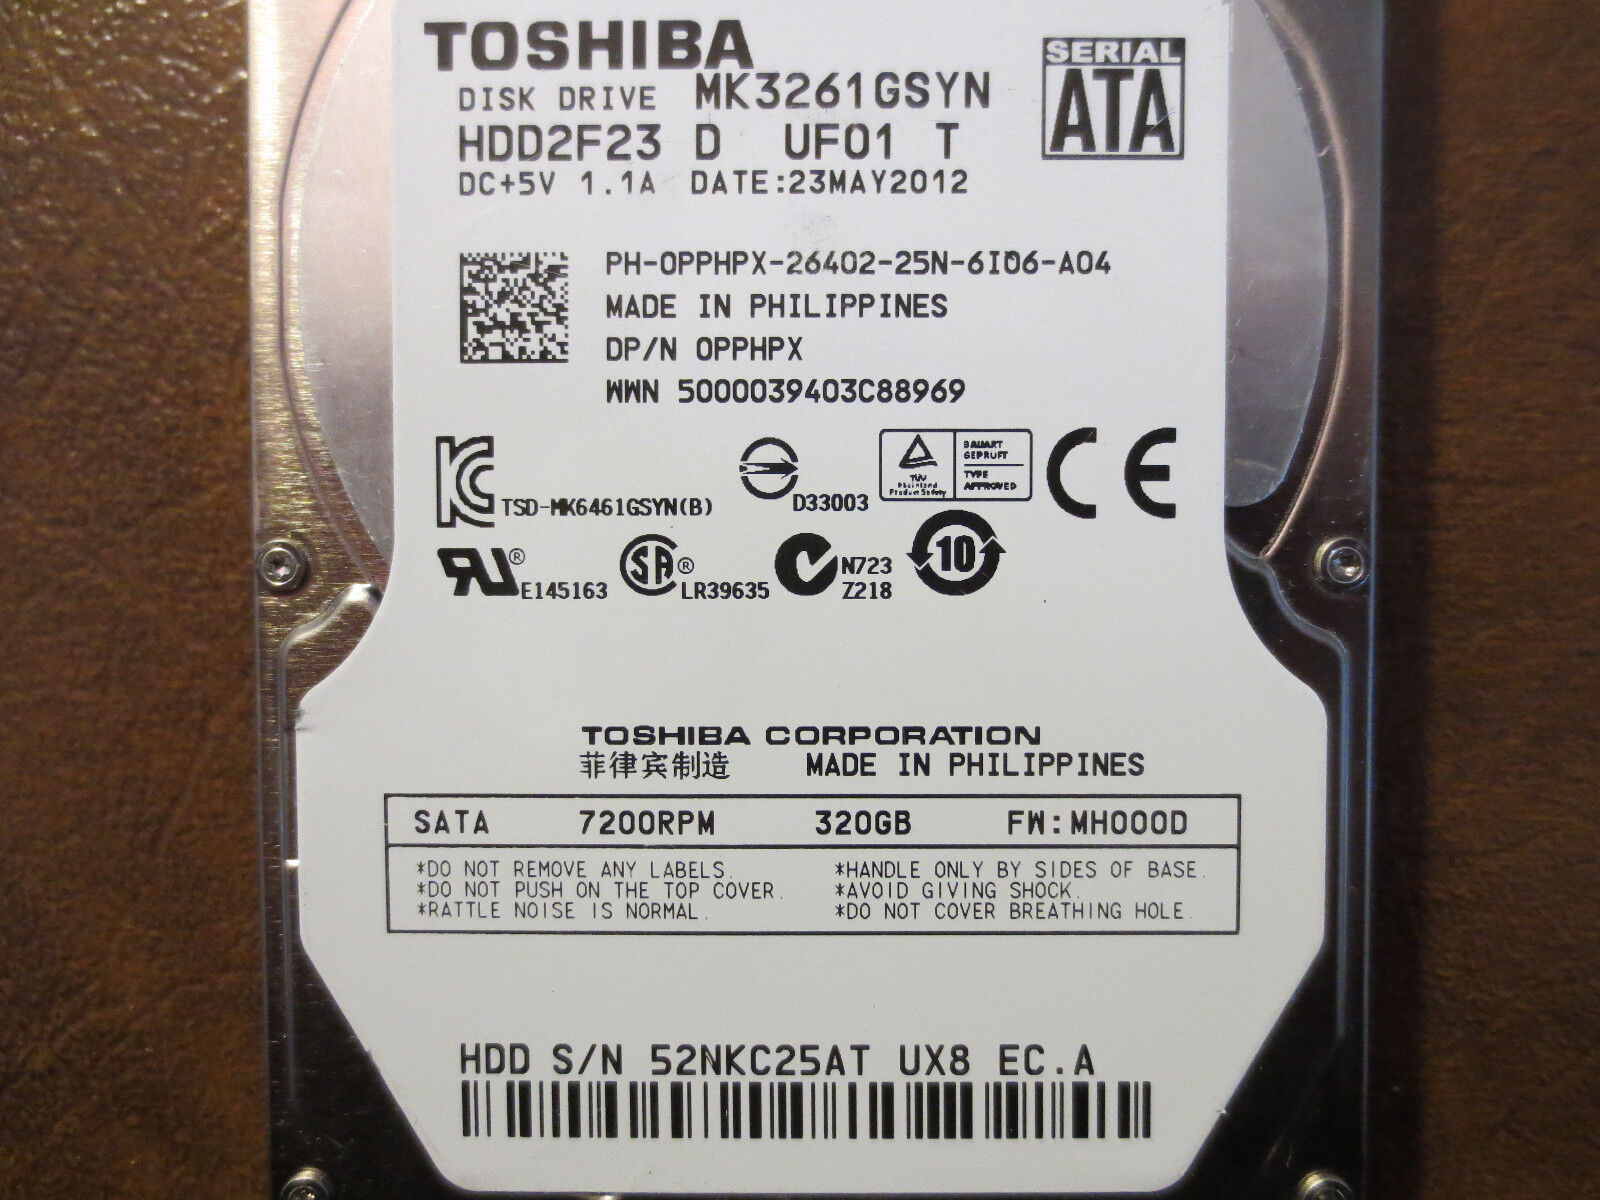 Toshiba MK3261GSYN (HDD2F23 D UF01 T) FW:MH000D 320gb 2.5